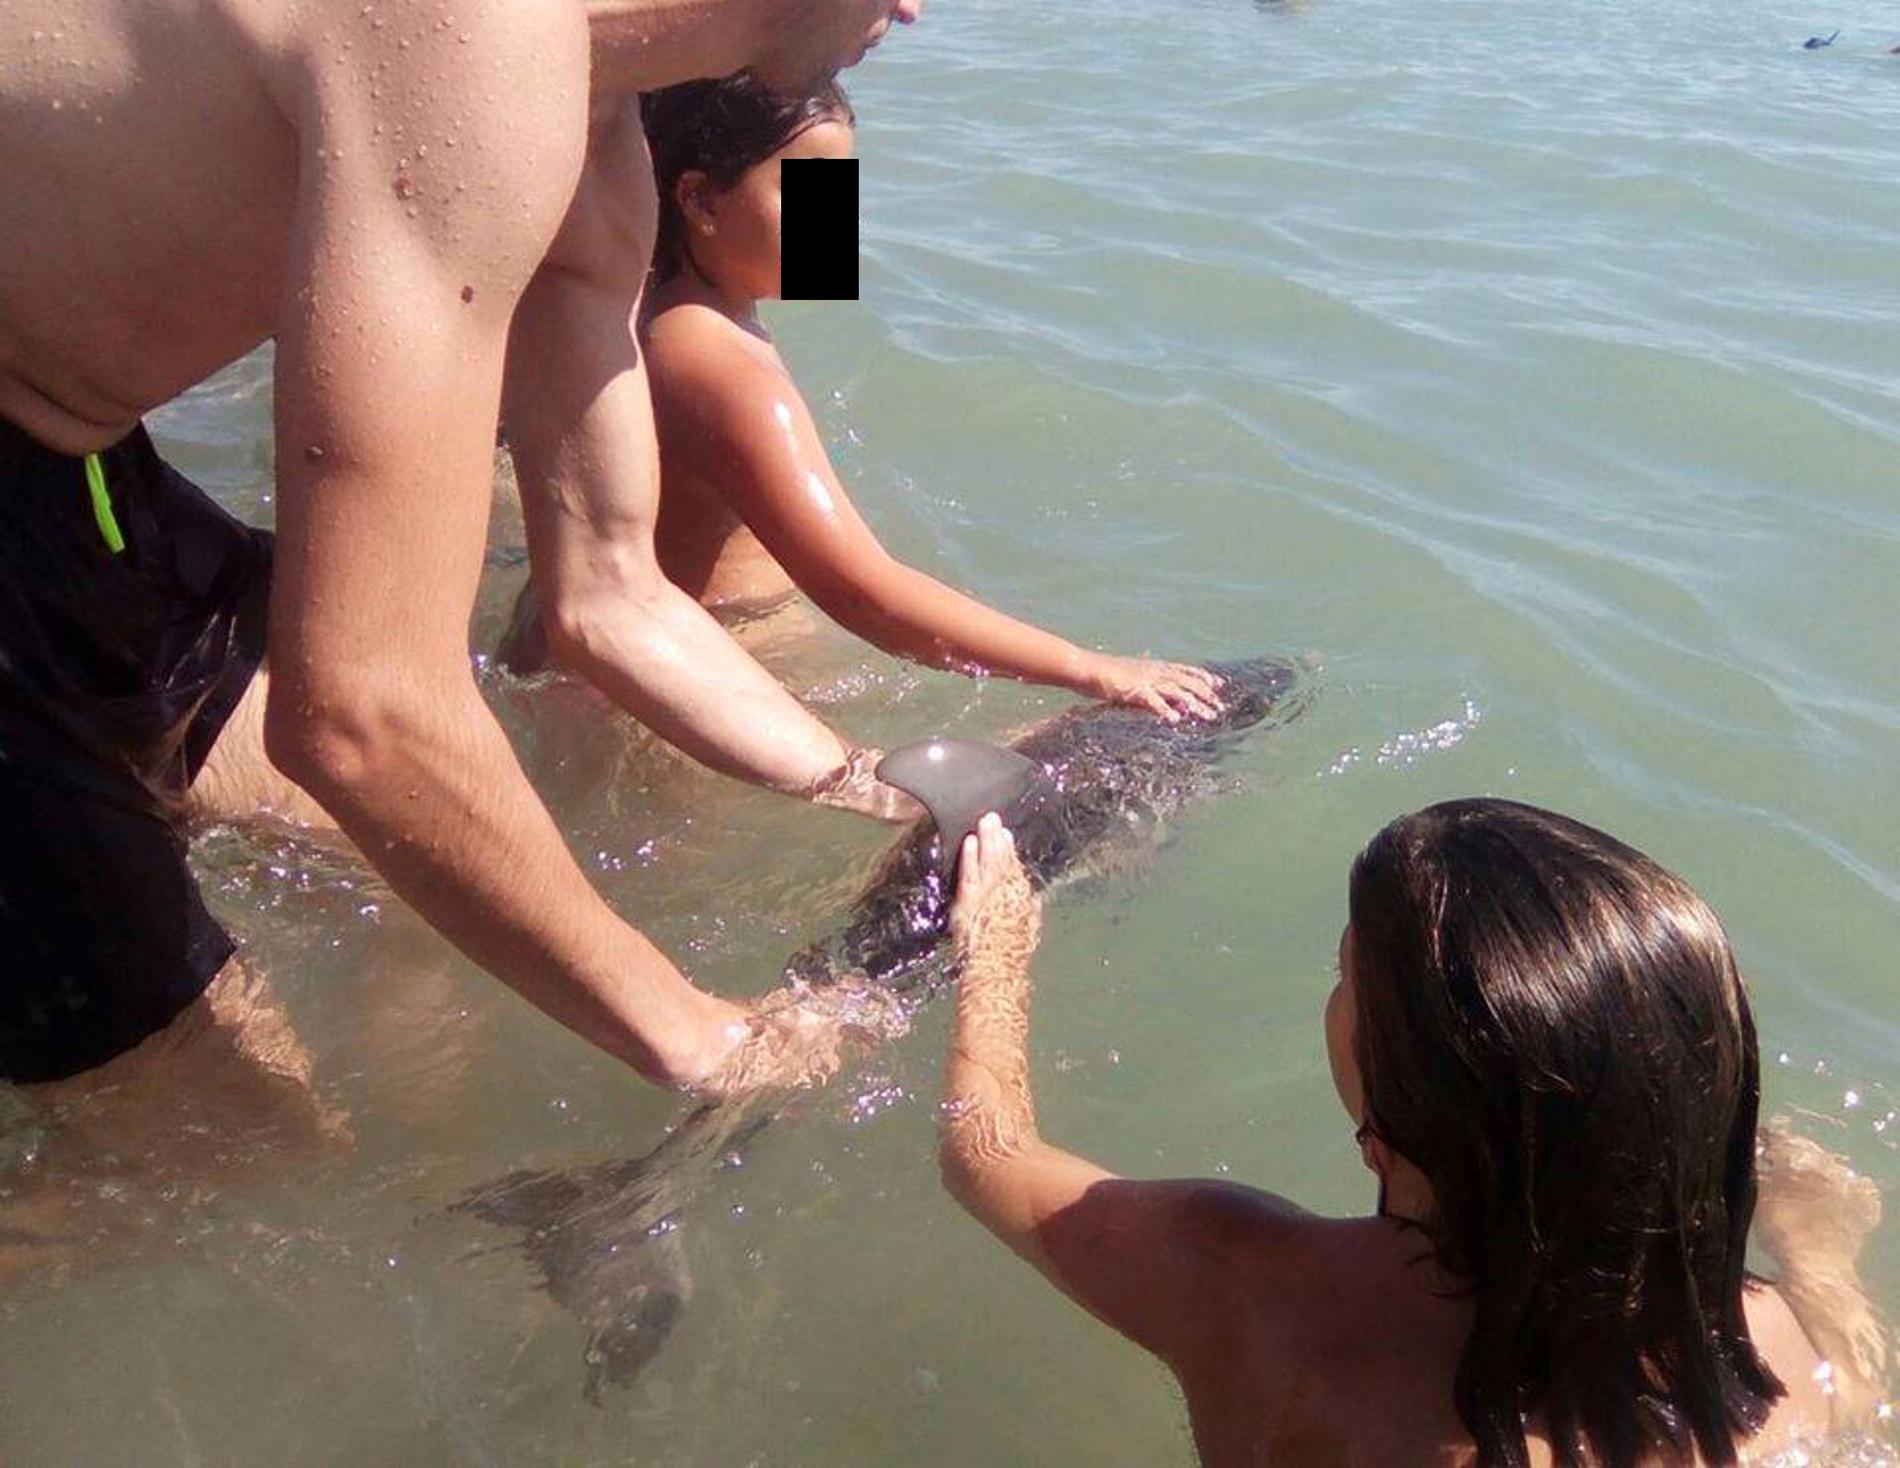 På bilderna kan man se hur barn ovetandes täcker över delfinens lufthål.